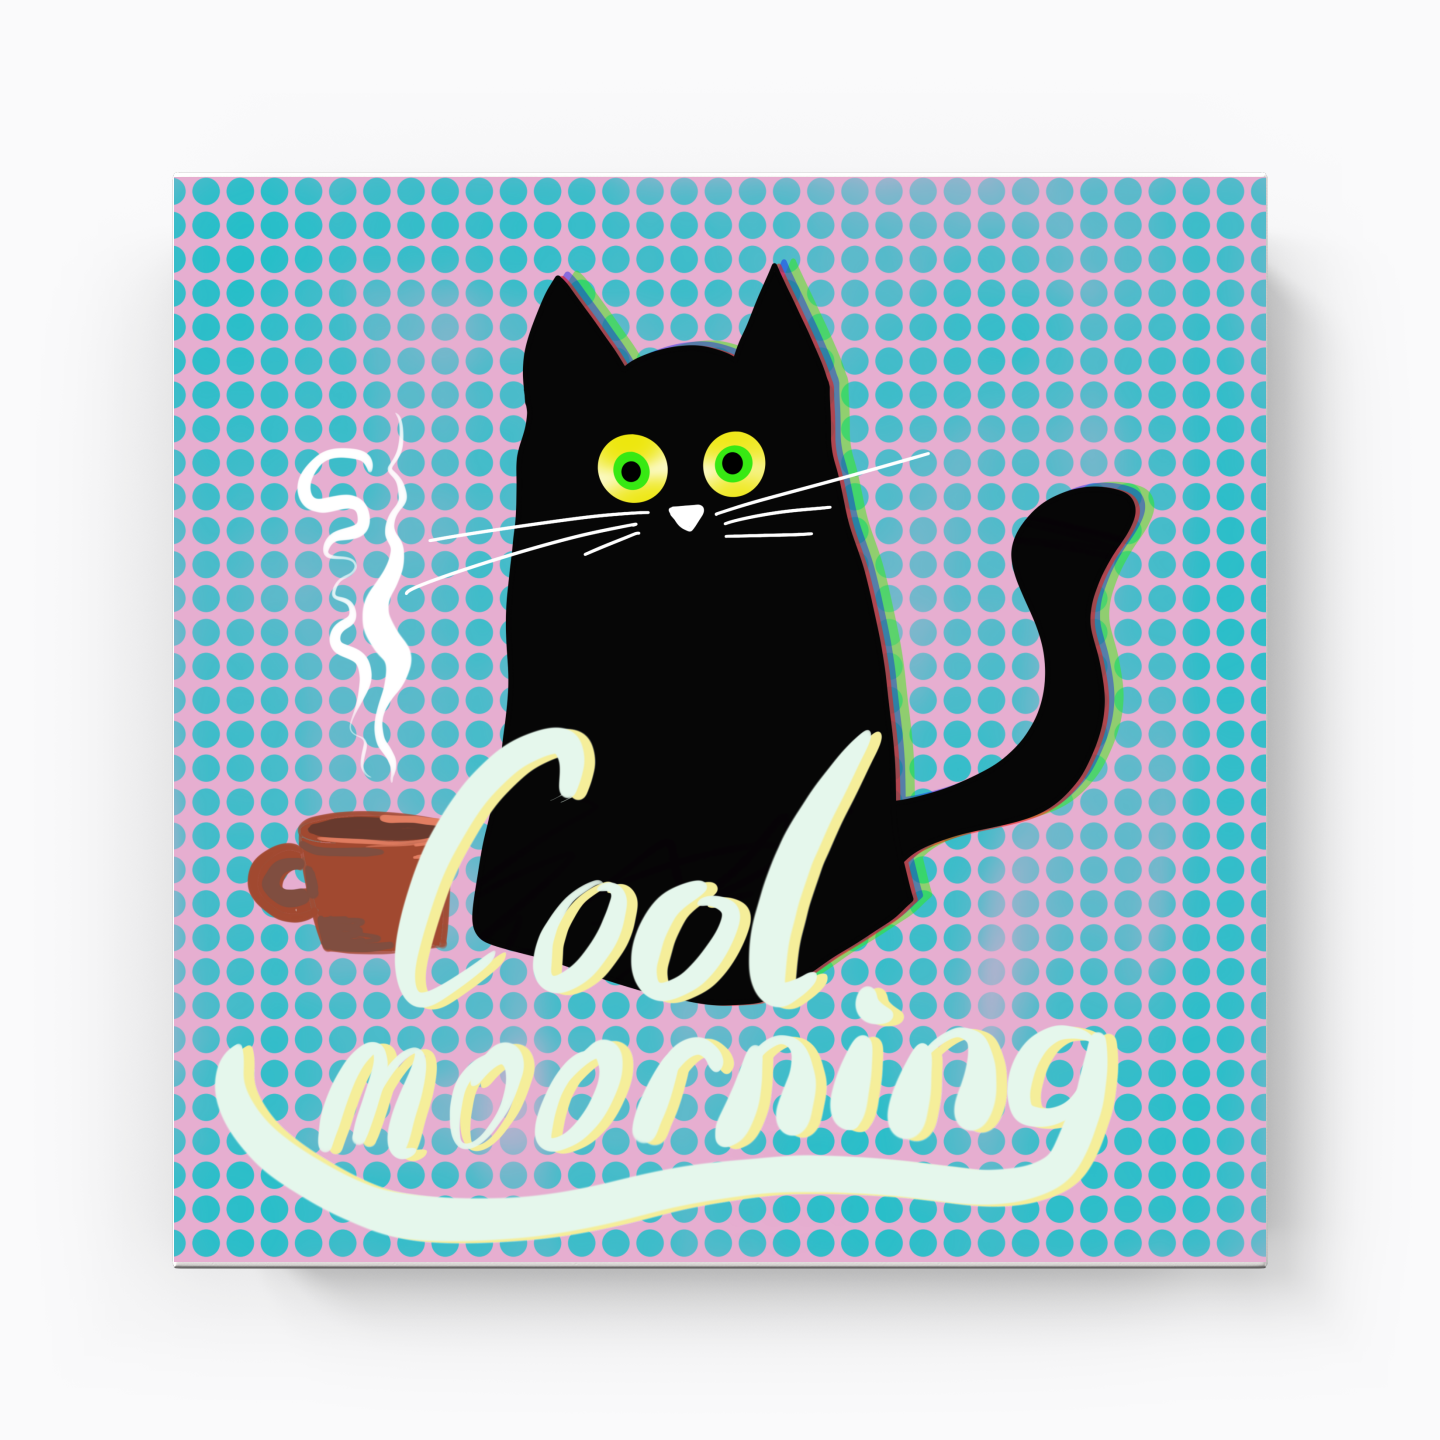 Cool Morning - Kanvas Tablo